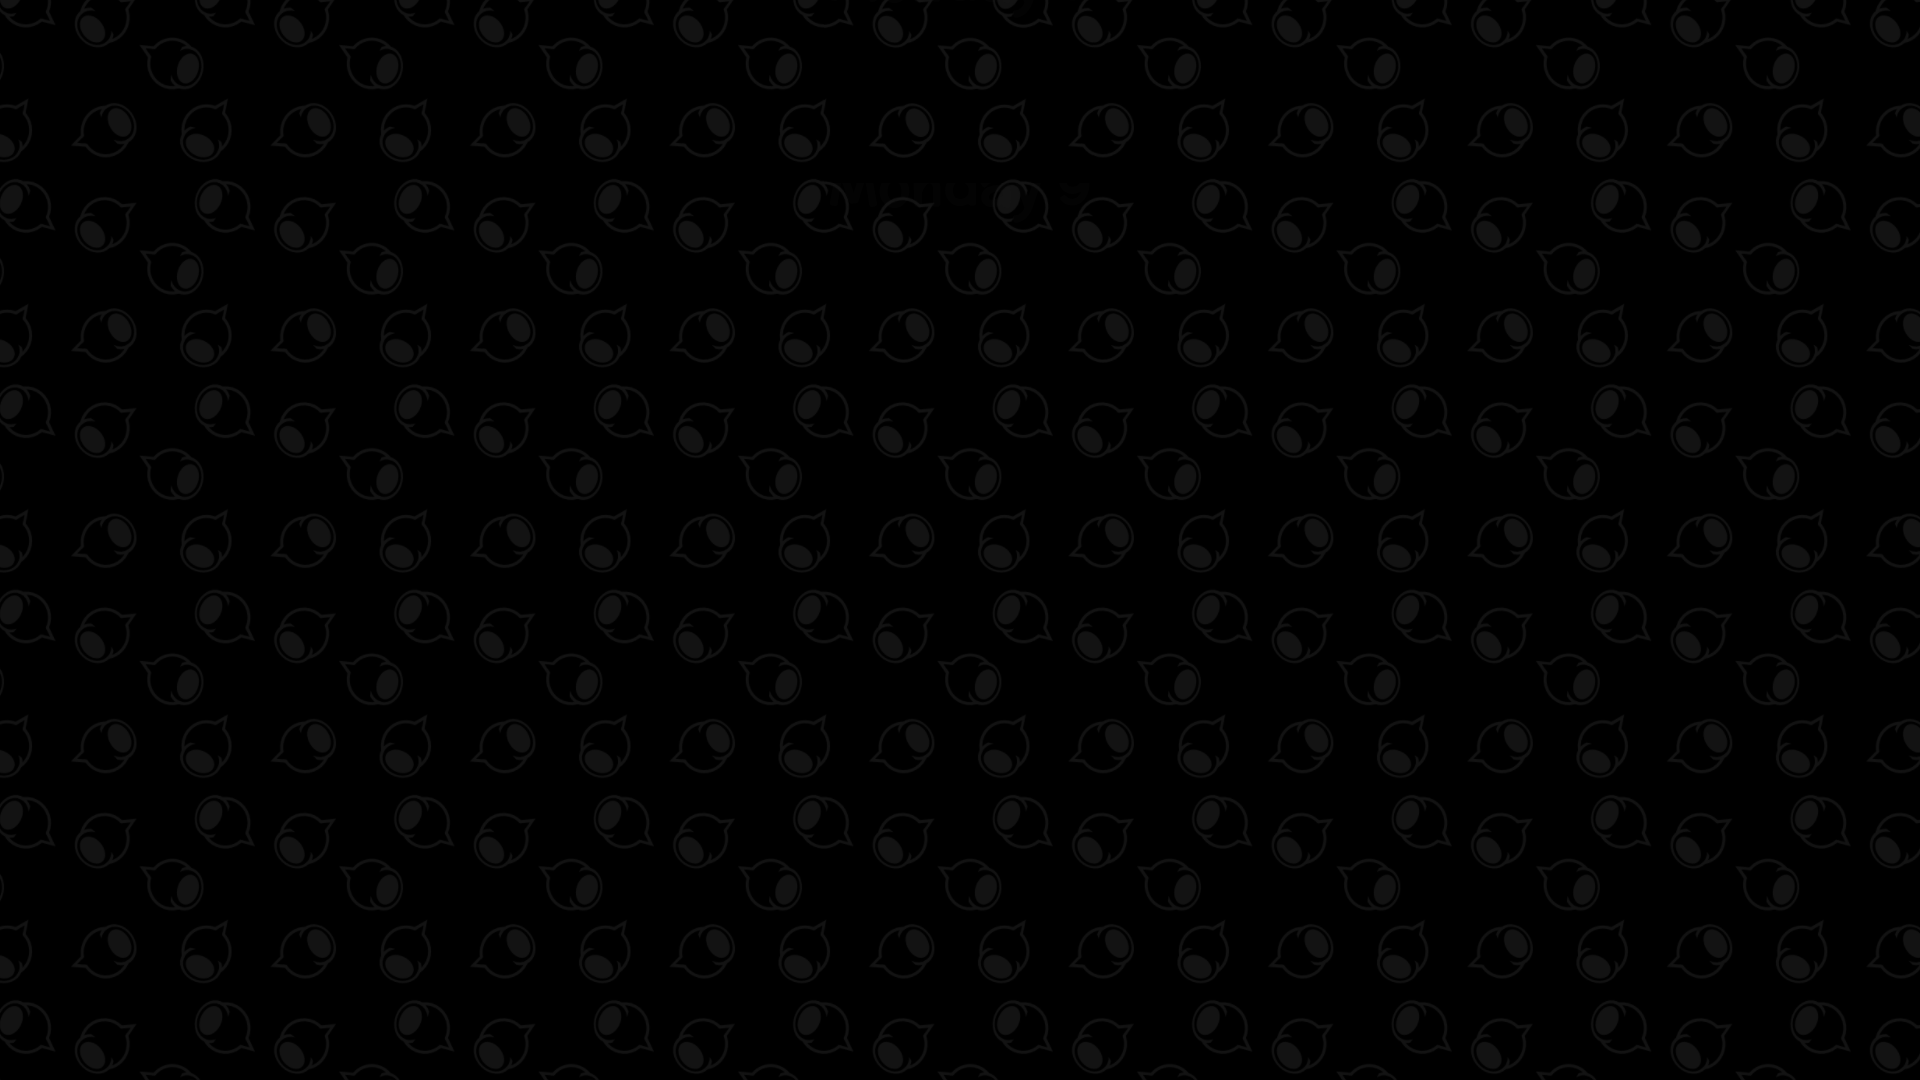 General 1920x1080 Dinkum dark background pattern dark texture simple background